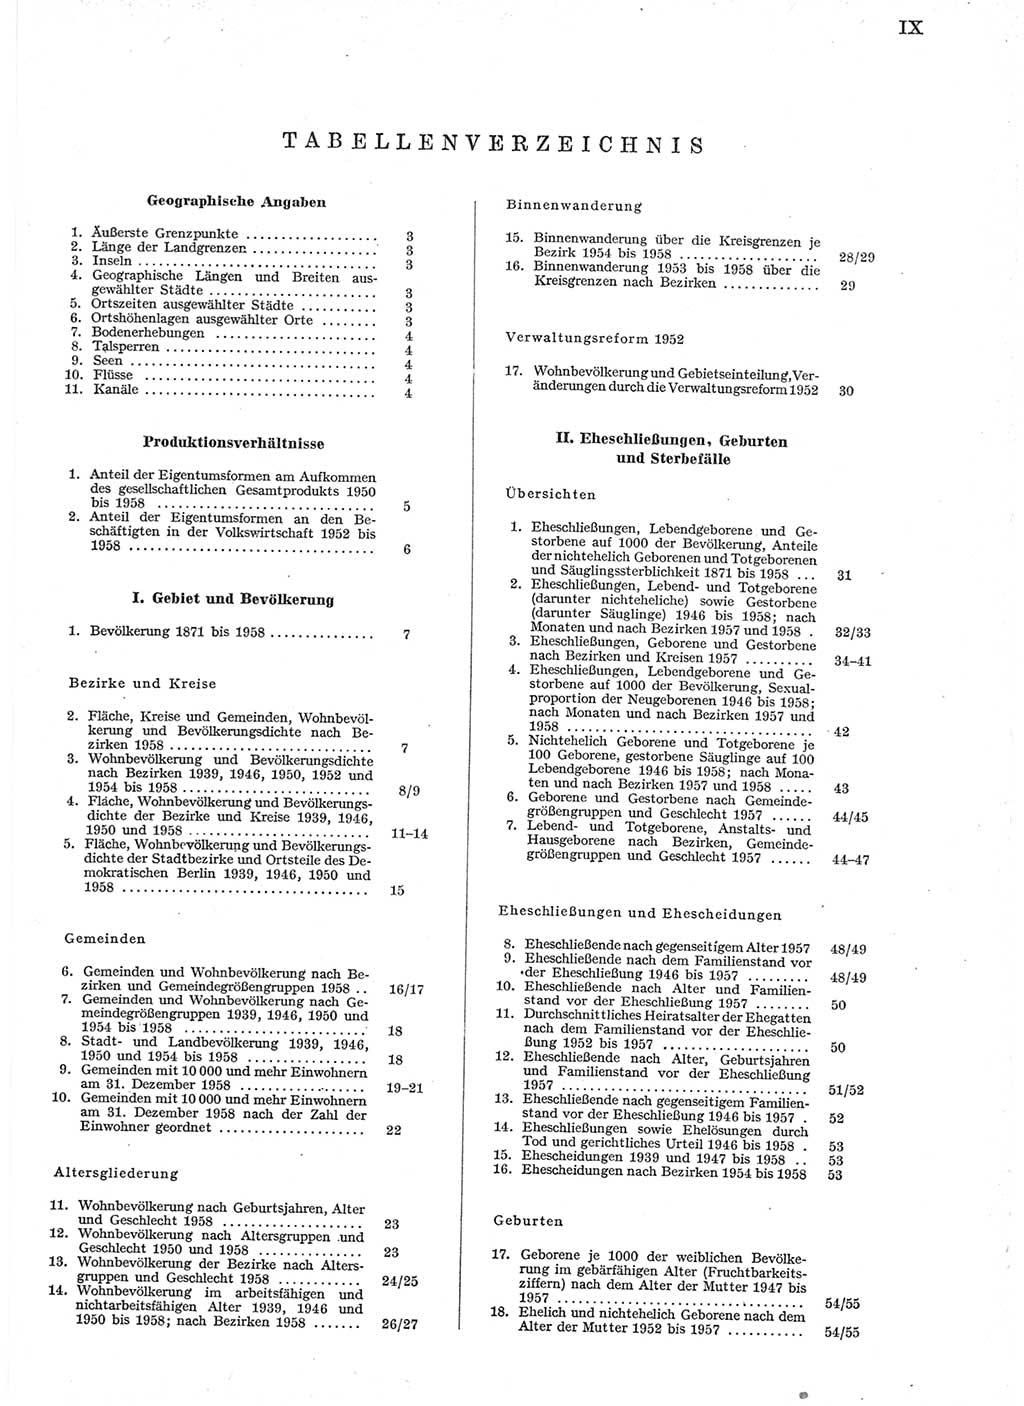 Statistisches Jahrbuch der Deutschen Demokratischen Republik (DDR) 1958, Seite 9 (Stat. Jb. DDR 1958, S. 9)